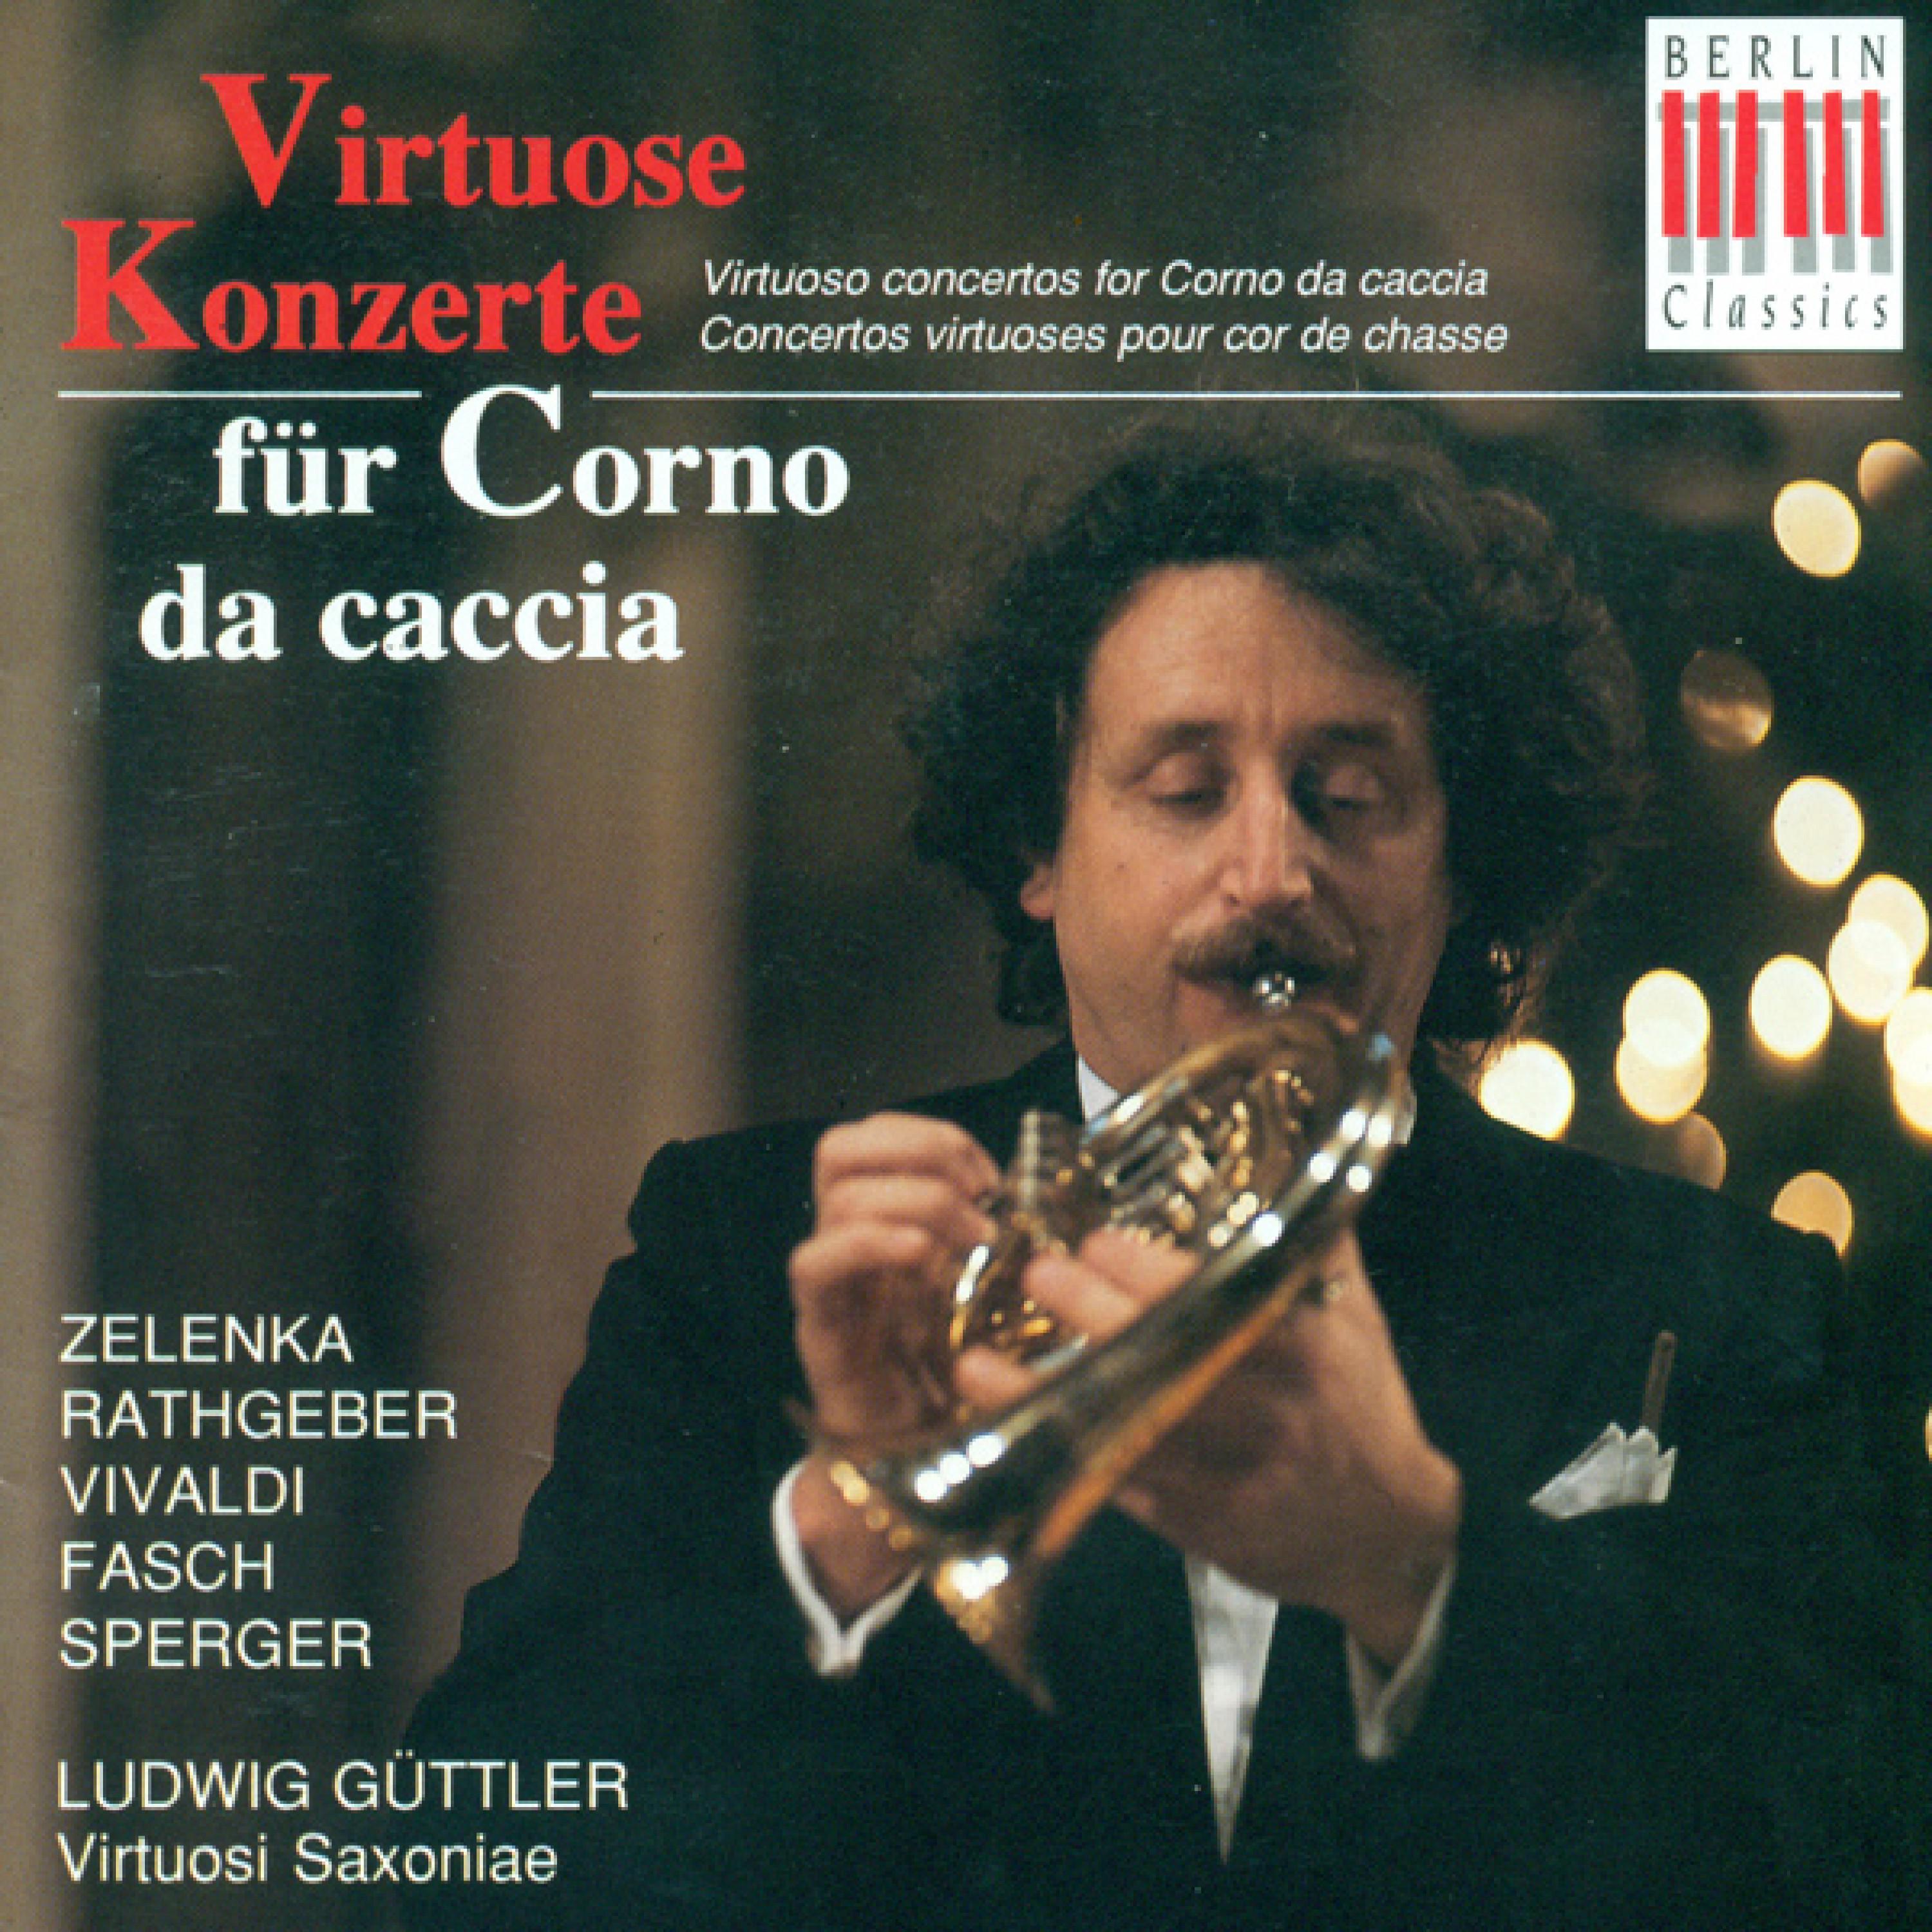 Concerto for Corno da caccia in C Major, Op. 6, No. 19: III. Allegro